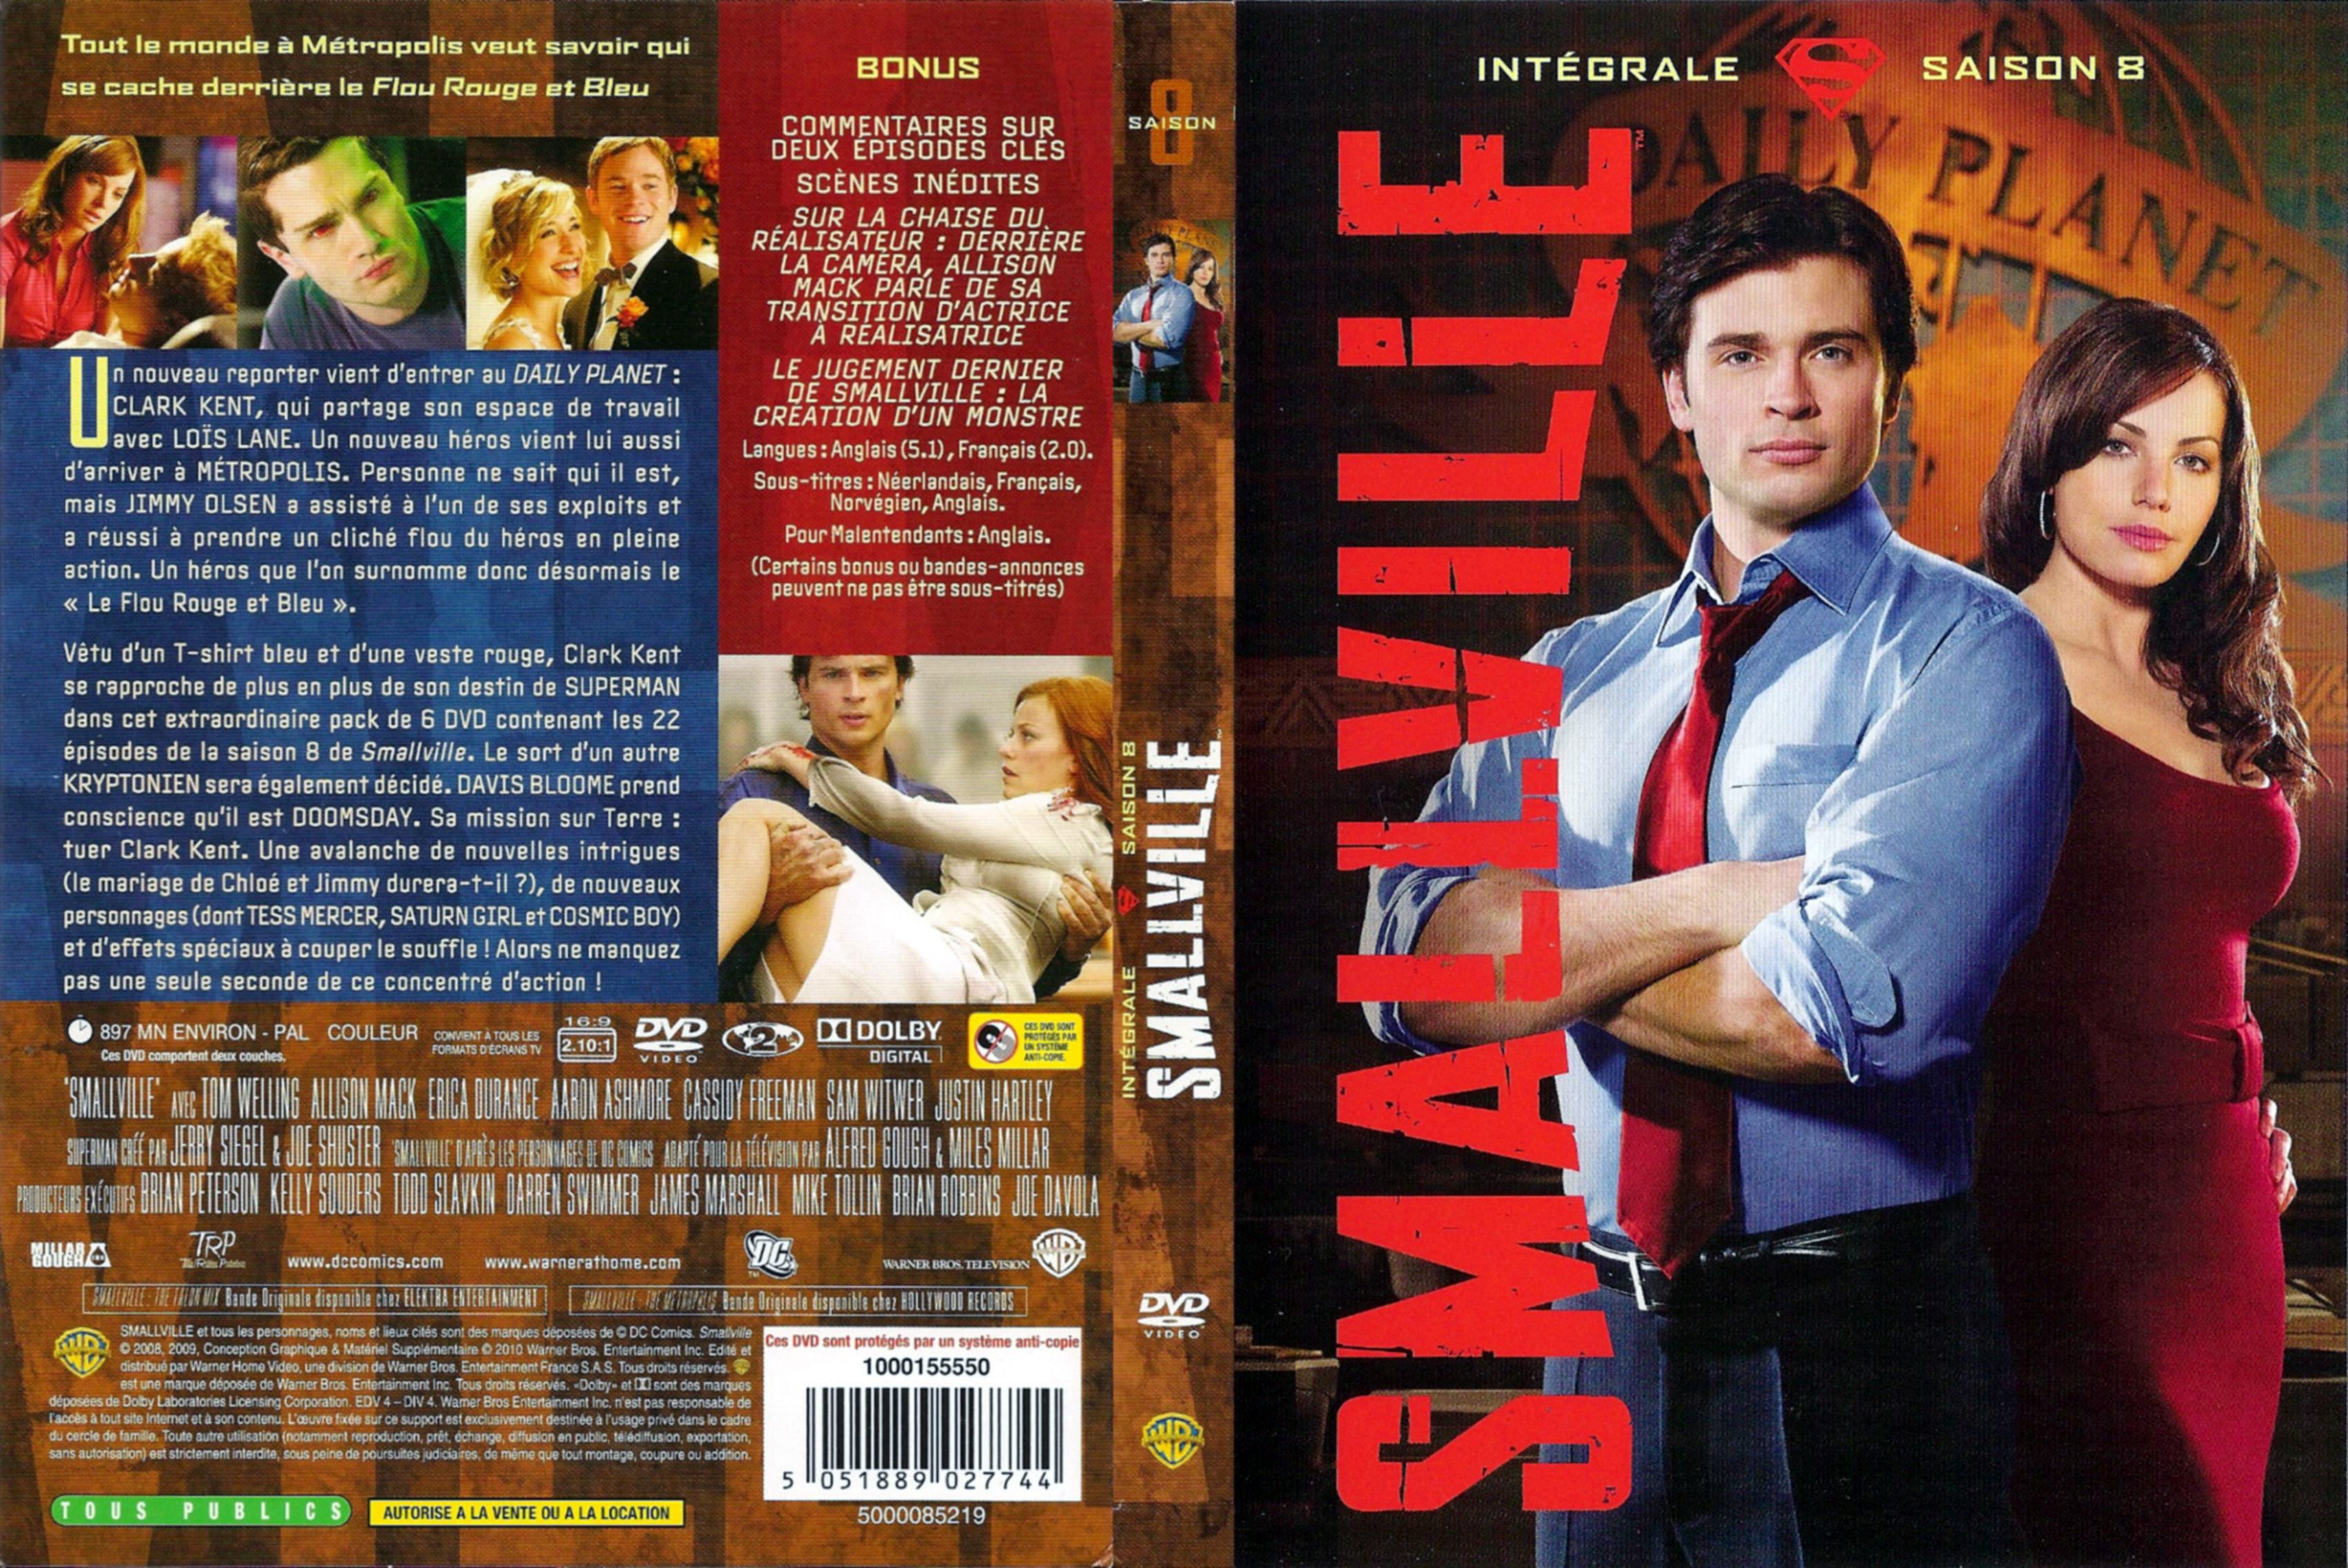 Jaquette DVD Smallville saison 8 COFFRET